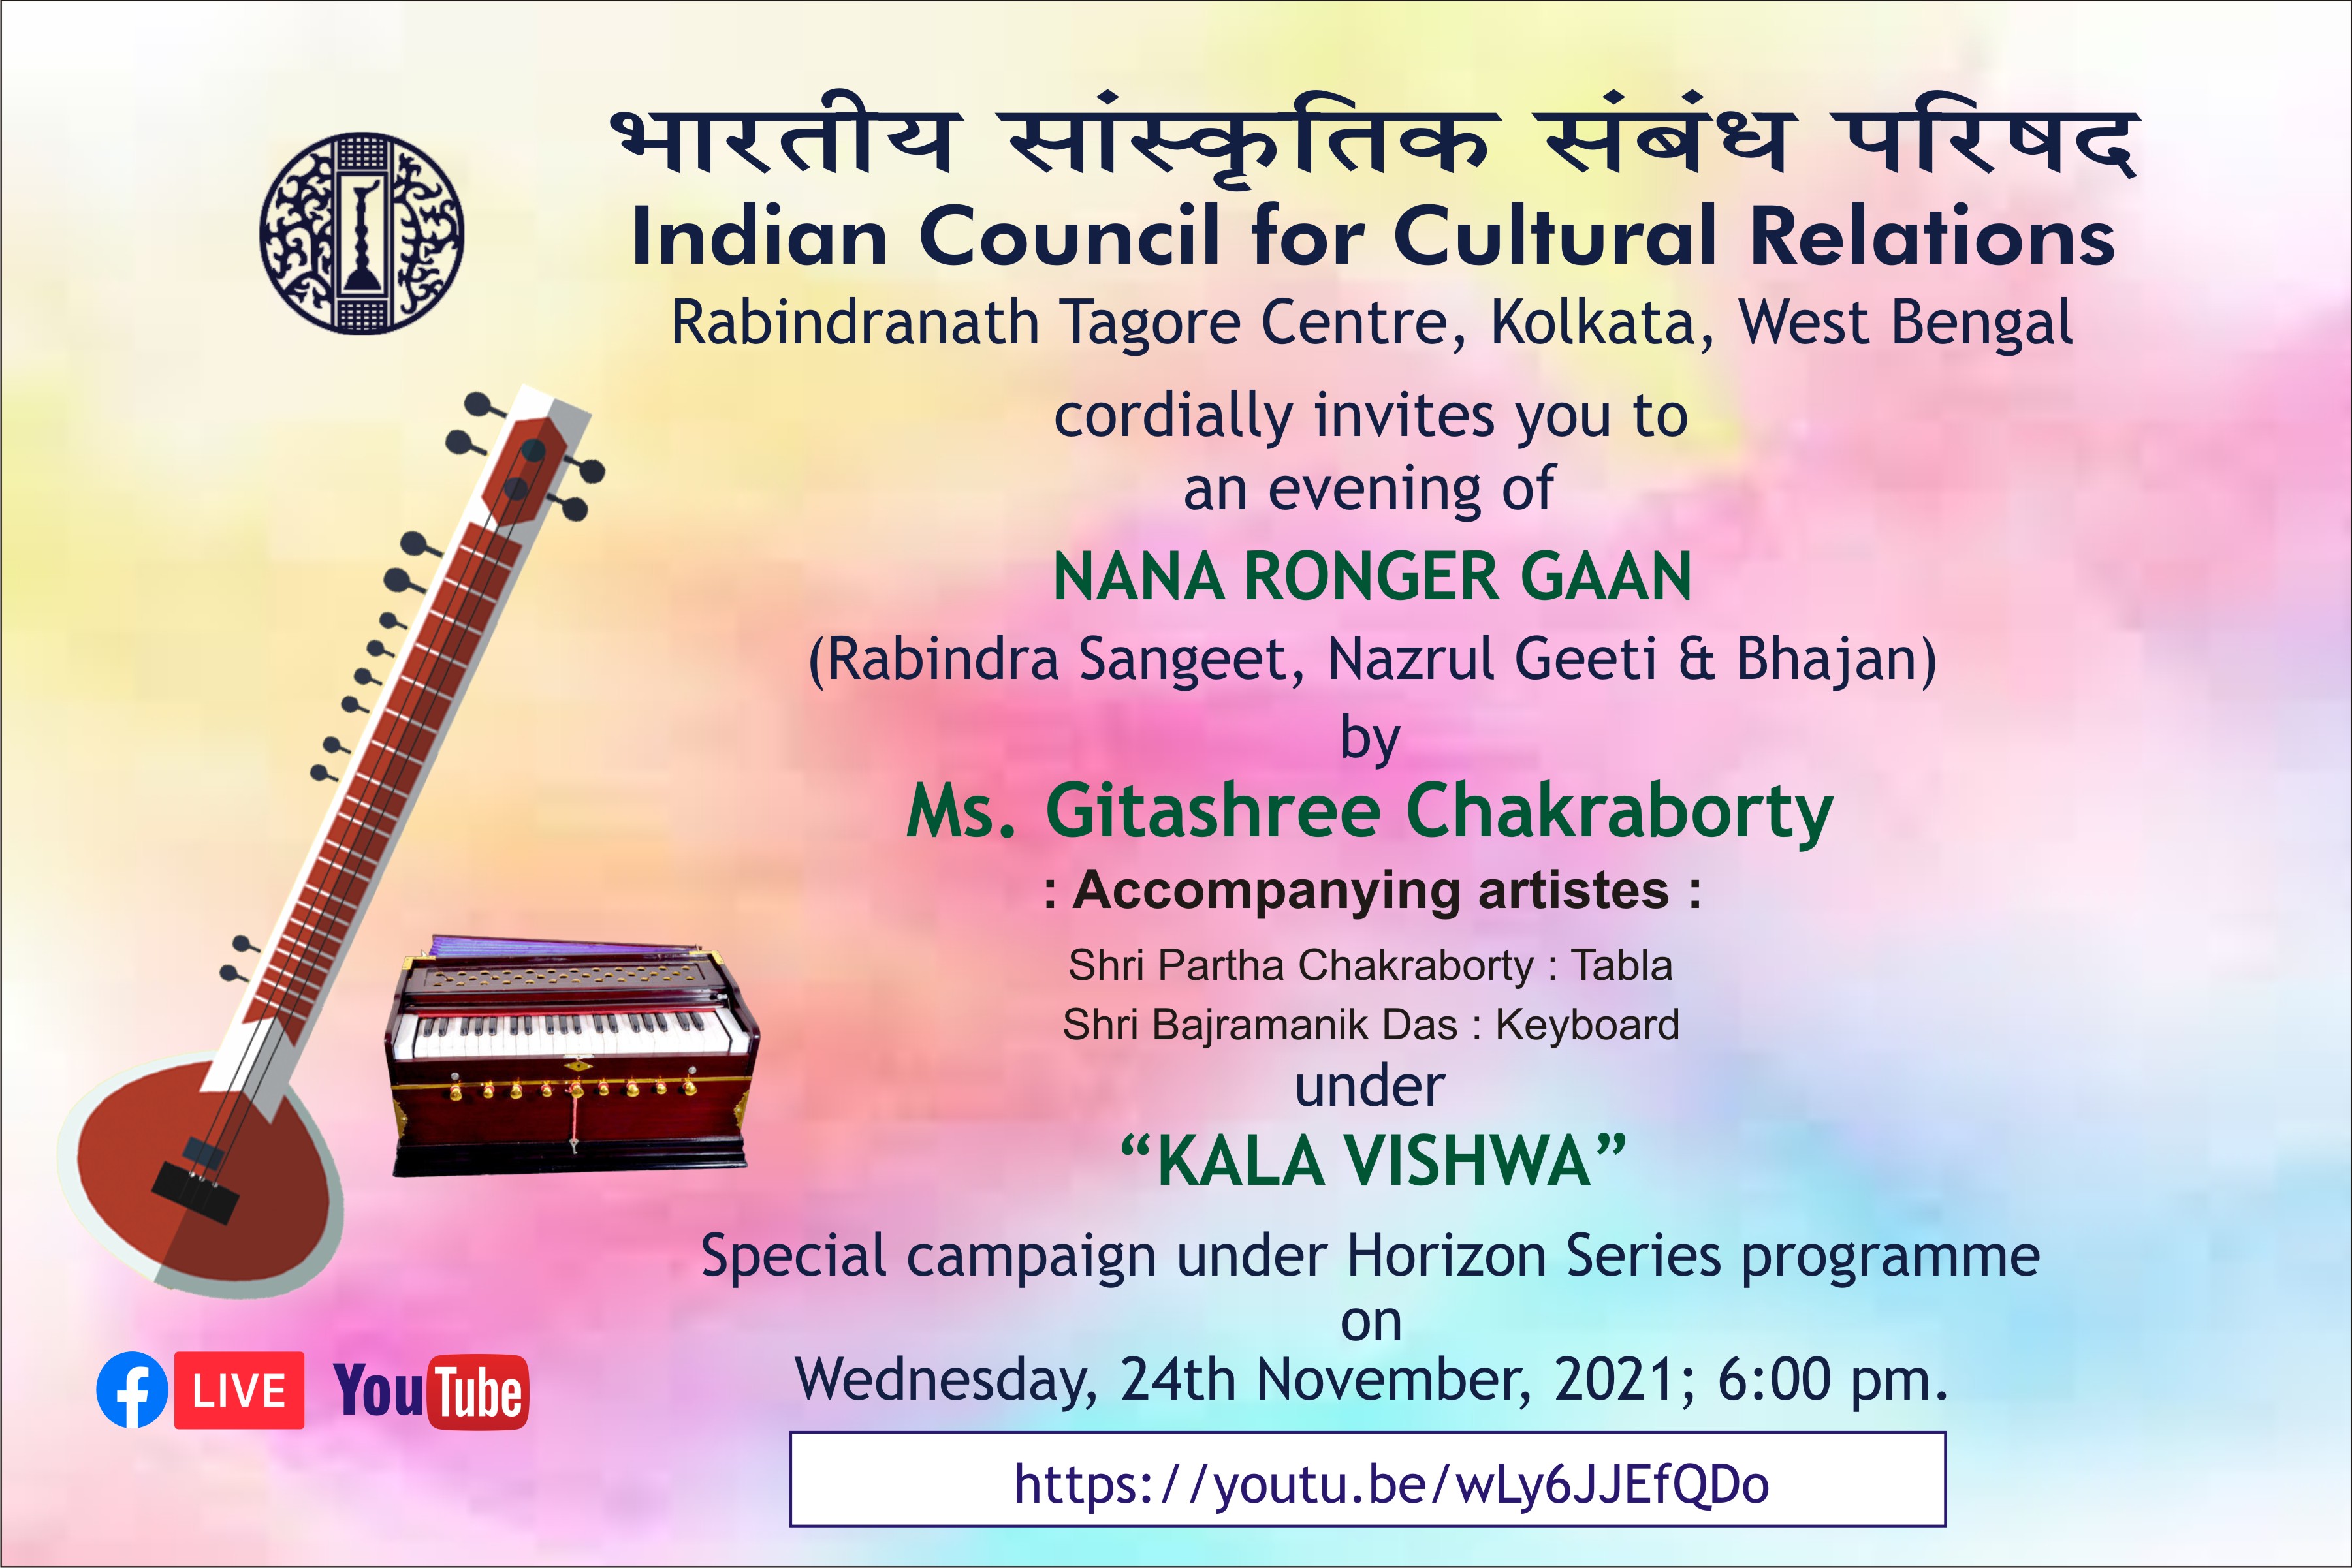 भारतीय सांस्कृतिक संबंध परिषद (आईसीसीआर), क्षेत्रीय कार्यालय, कोलकाता में सुश्री गीताश्री चक्रवर्ती द्वारा बुधवार, 24 नवंबर, 2021 को सायं 6.00 बजे क्षितिज श्रृंखला "नाना रेंजर गान" के तहत एक विशेष अभियान "कला विश्व" में आप सादर आमंत्रित हैं। .